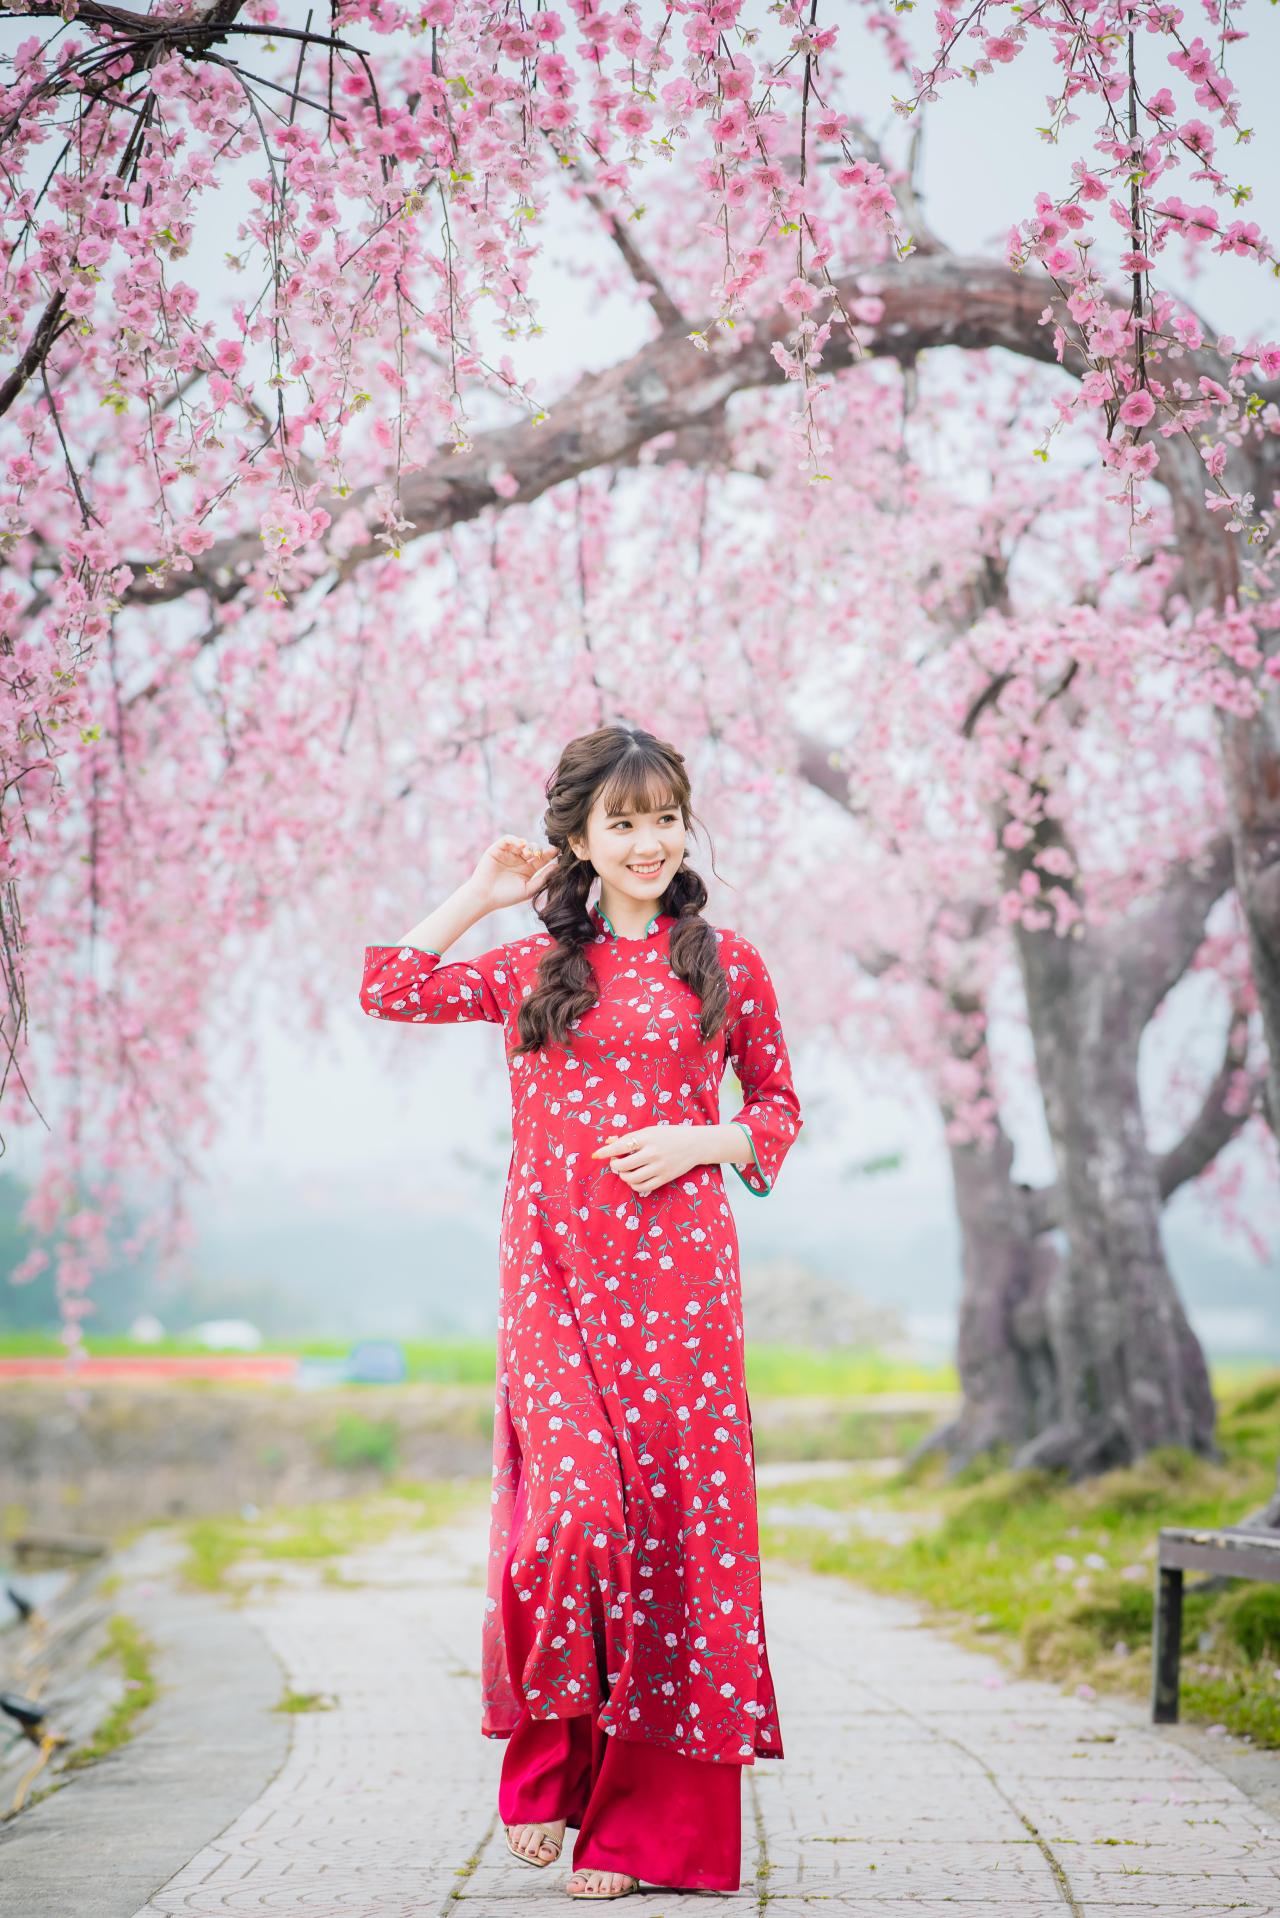 棕色双马尾卷发，齐刘海儿，穿着红色旗袍的越南少女走在樱花树下的石路上 右手轻抚马尾 左手放在腰间 咧嘴露齿微笑 站姿 全身照 正面照 竖幅